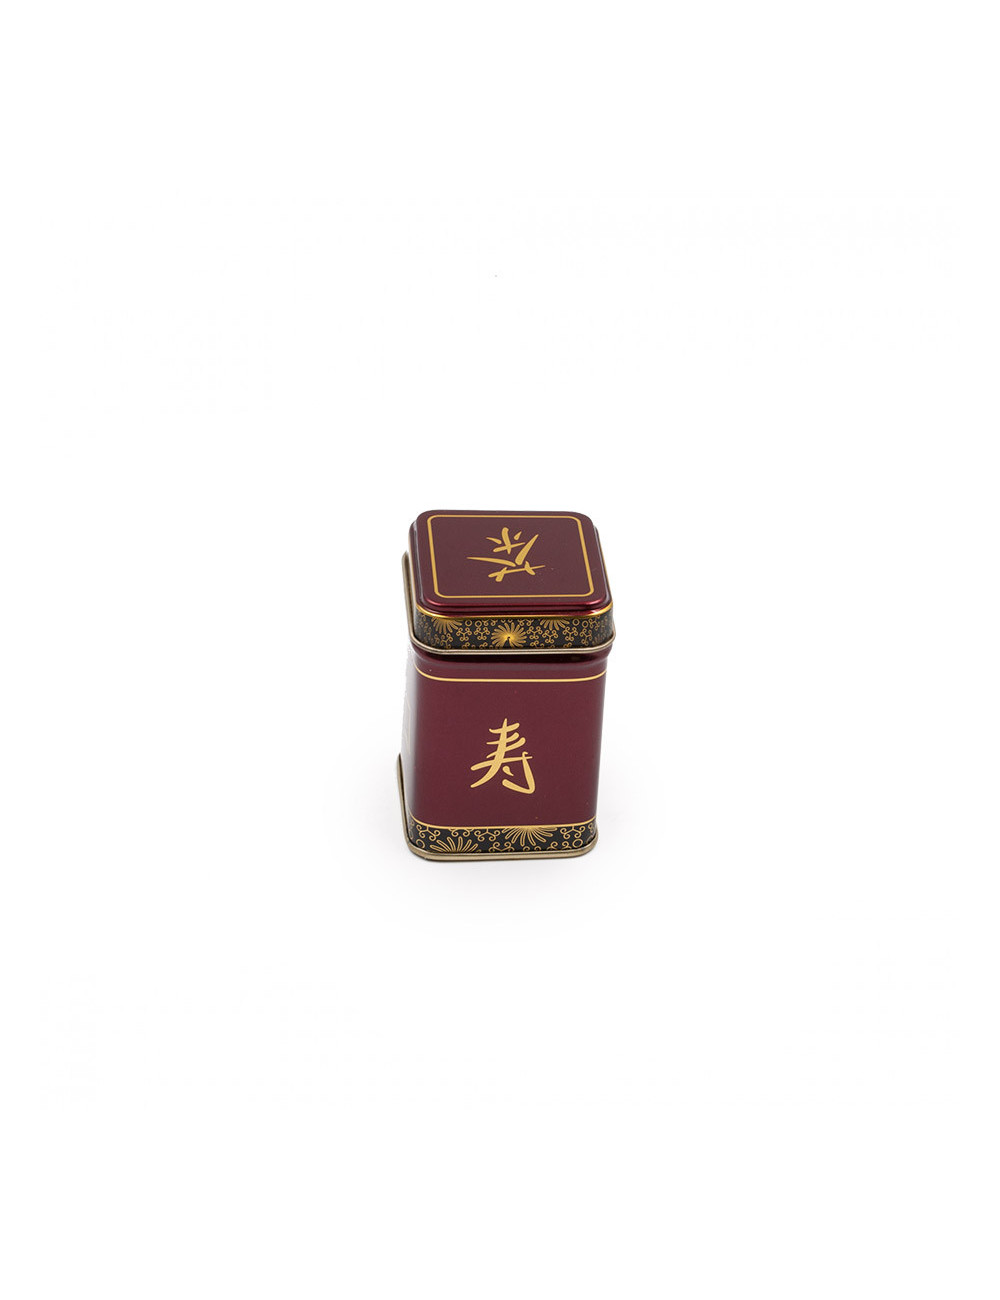 Preziosa scatolina per il tè bordeaux con ideogramma  dorato - La Pianta del Tè shop online